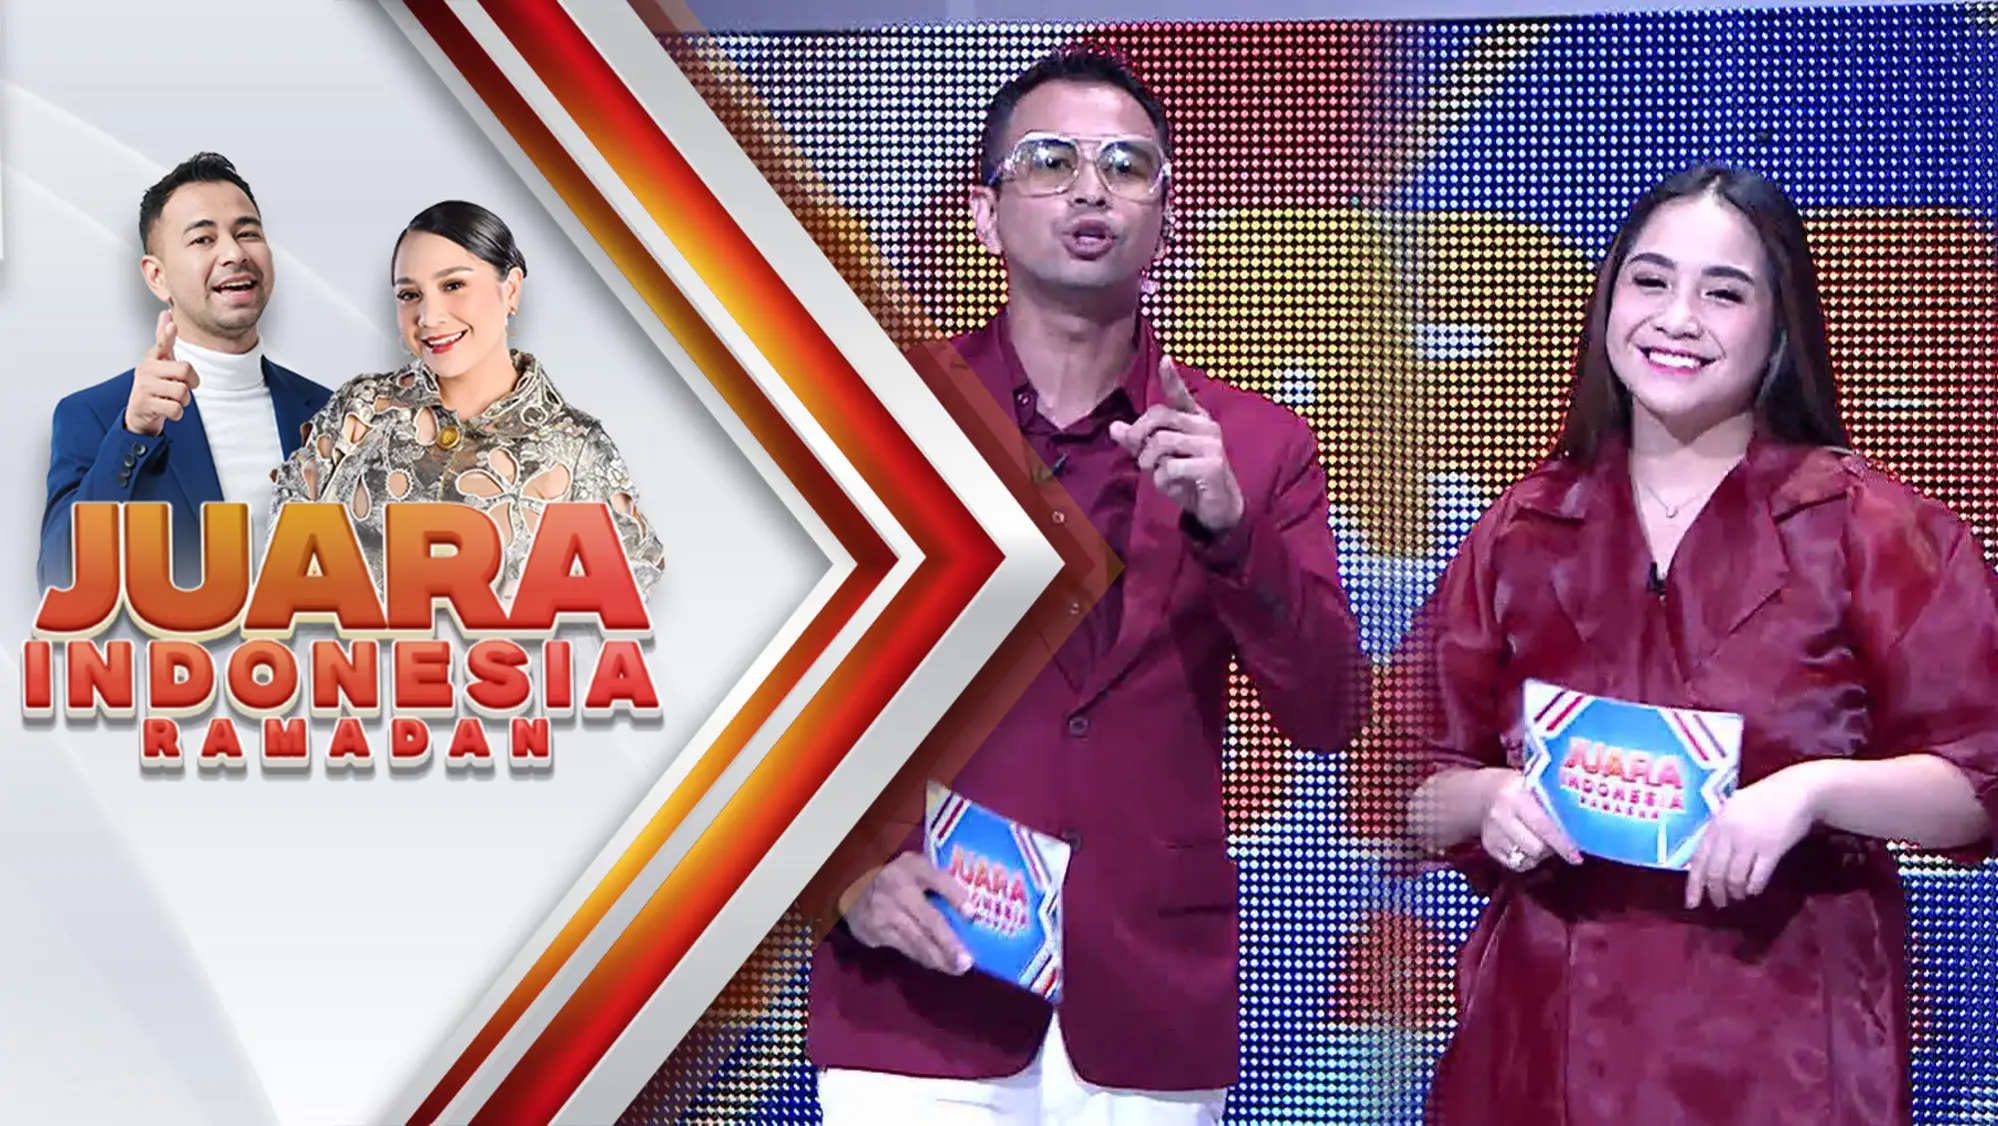 Jadwal TV Indosiar Hari Ini, Jumat 14 April 2023: Juara Indonesia Ramadan